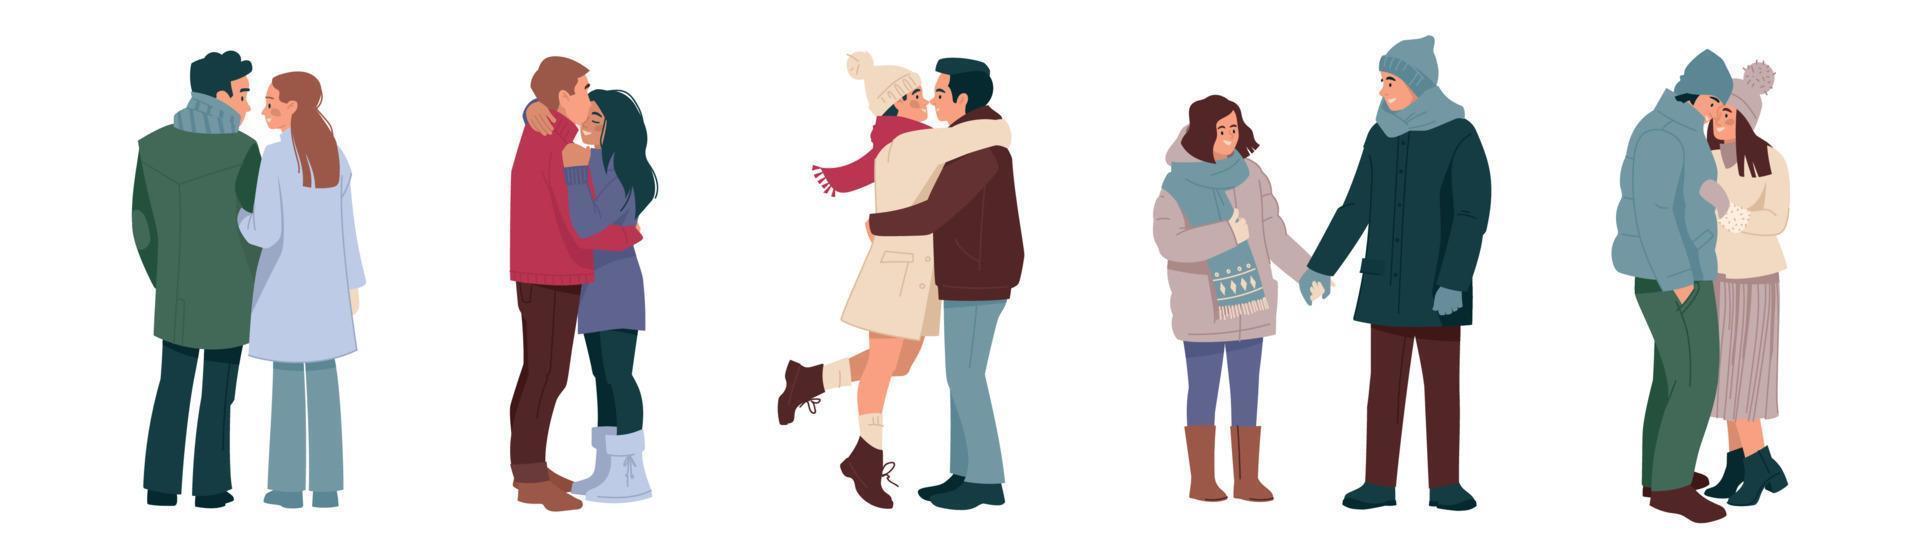 kramas par i vinter- kläder. en man och en kvinna i kärlek, en Lycklig familj på en promenad. vinter- romantik. platt. uppsättning av vektor illustrationer.